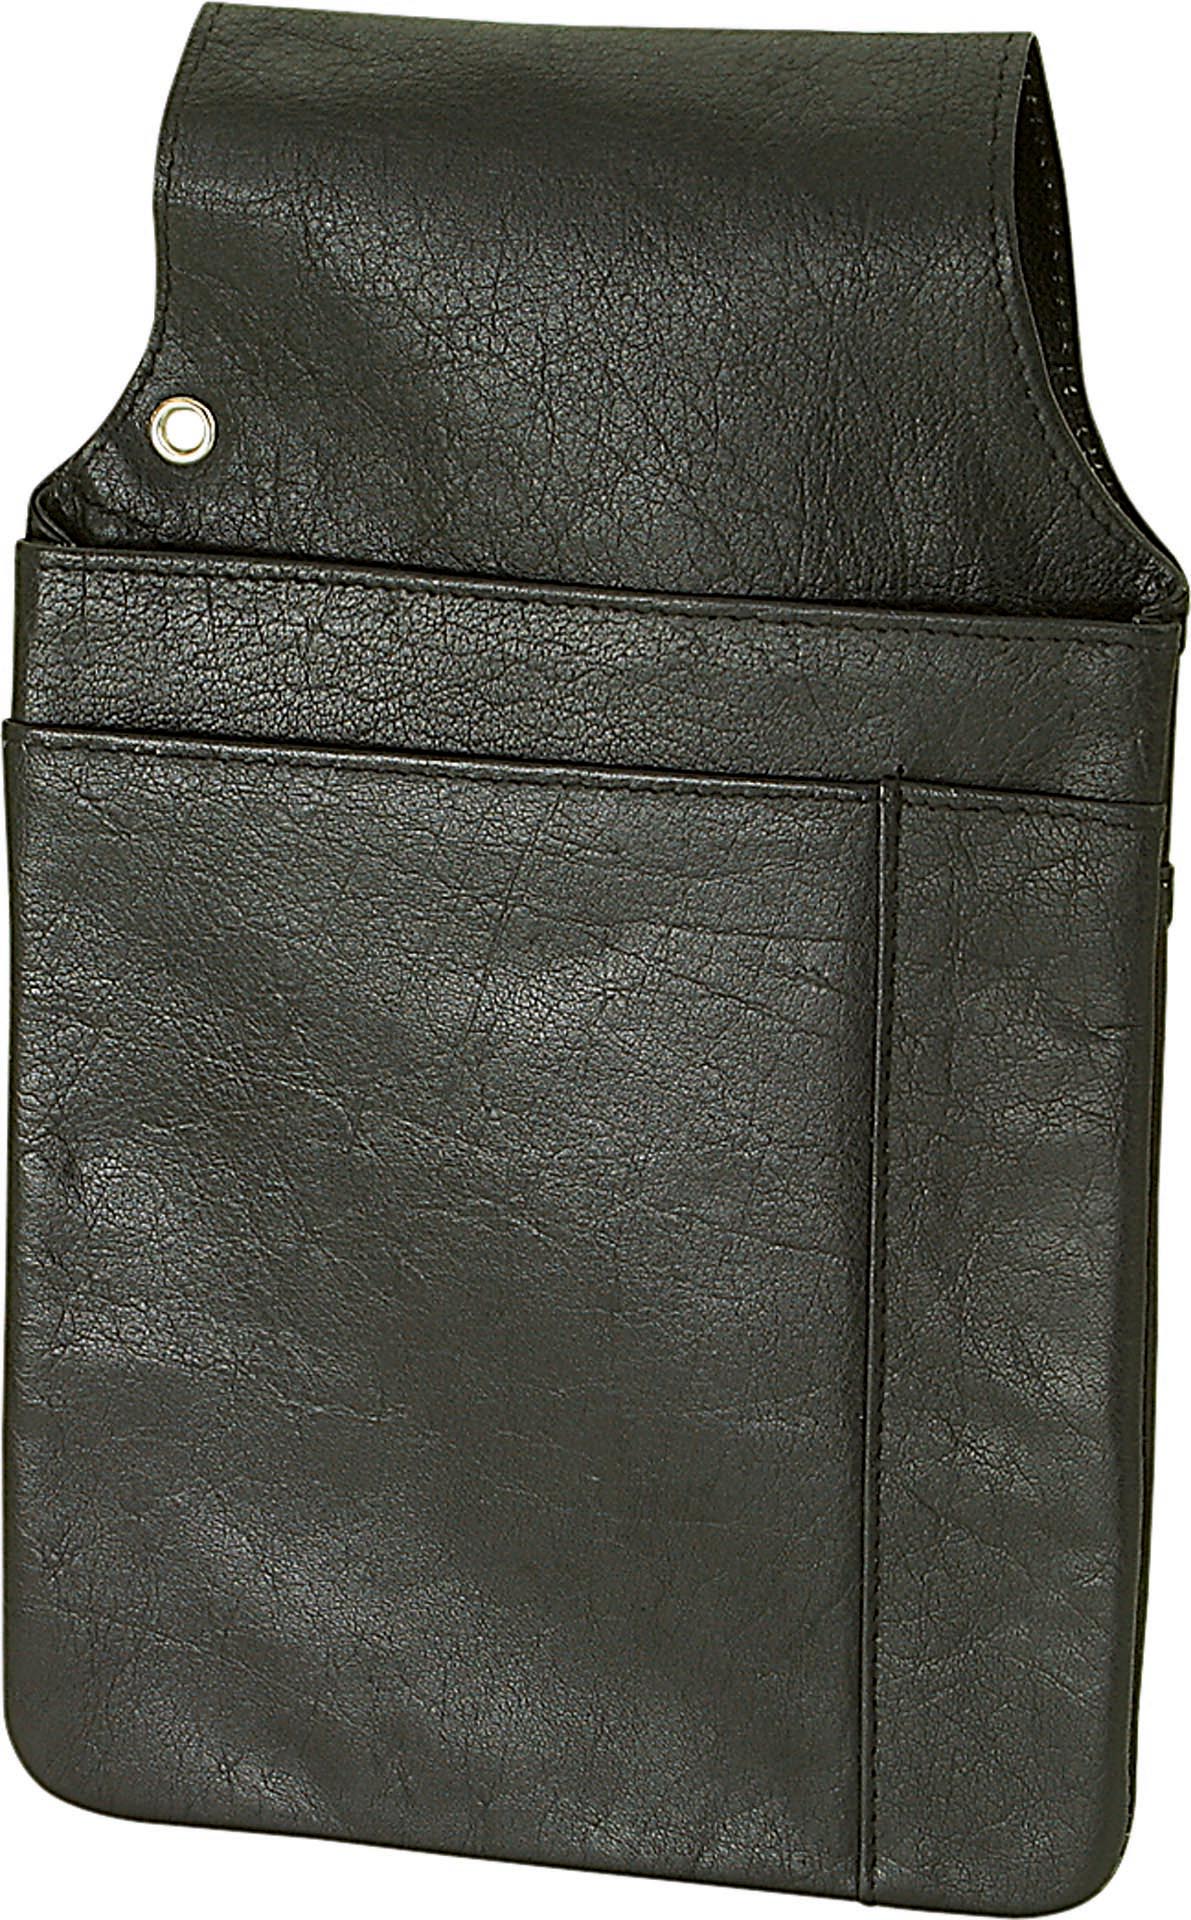 Revolvertasche Rindnappa-Leder schwarz für Kellnerbörse